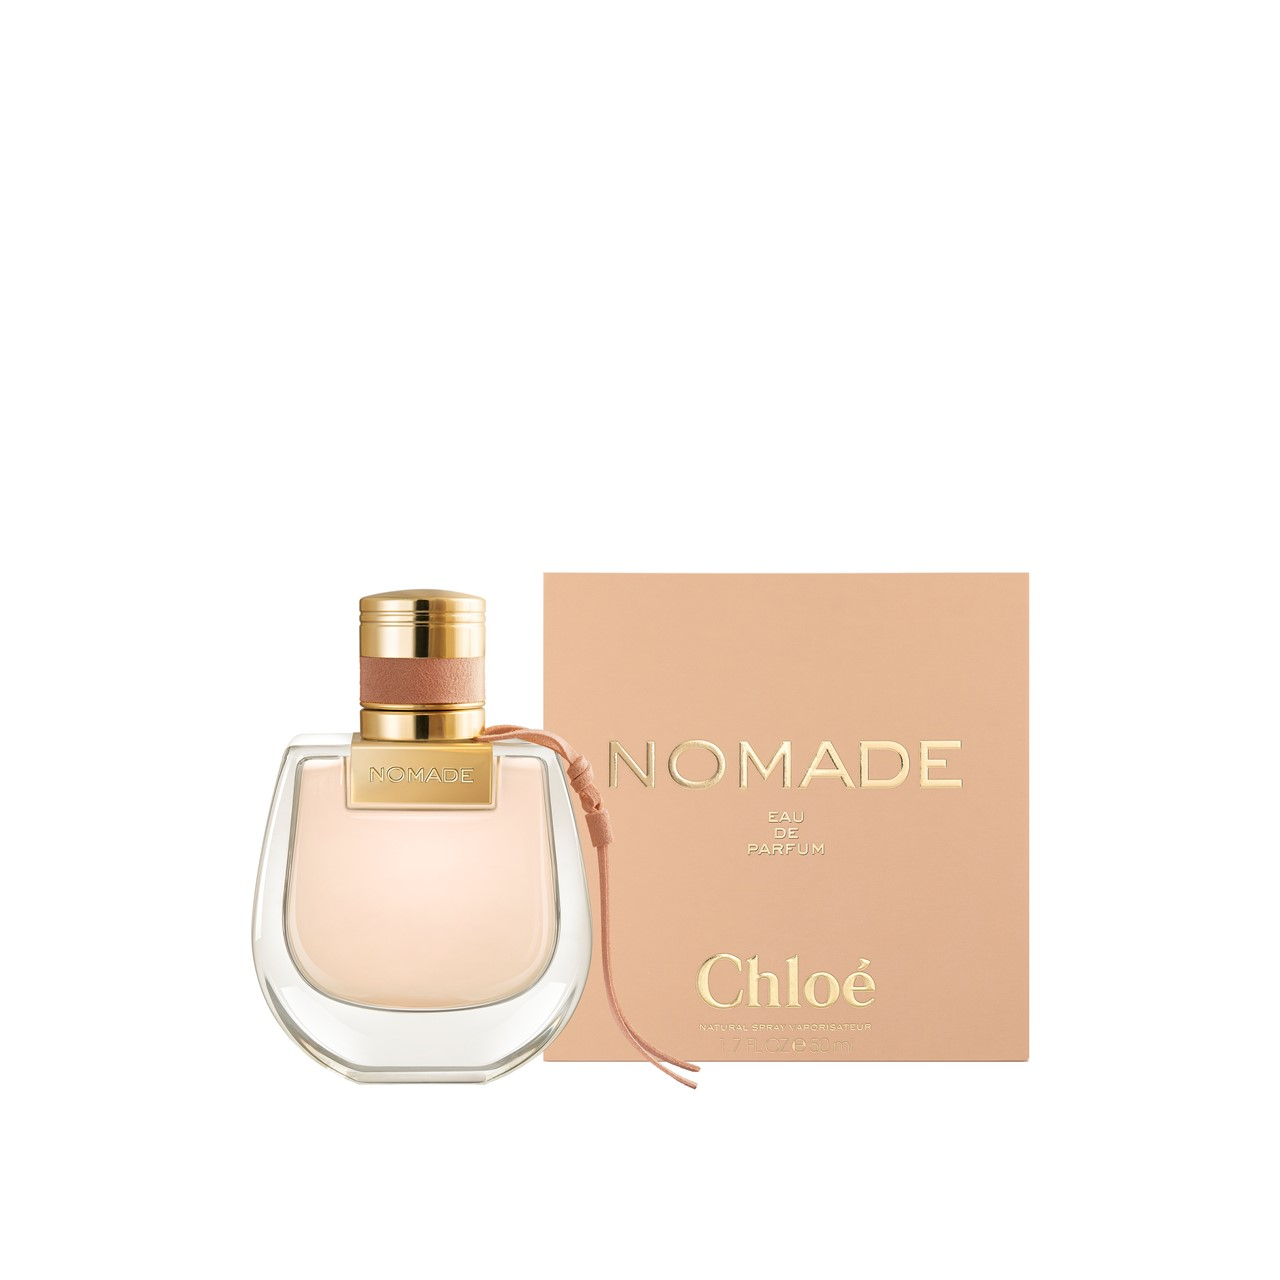 Buy Chloé Nomade Eau de Parfum 50ml oz) (1.7fl · USA